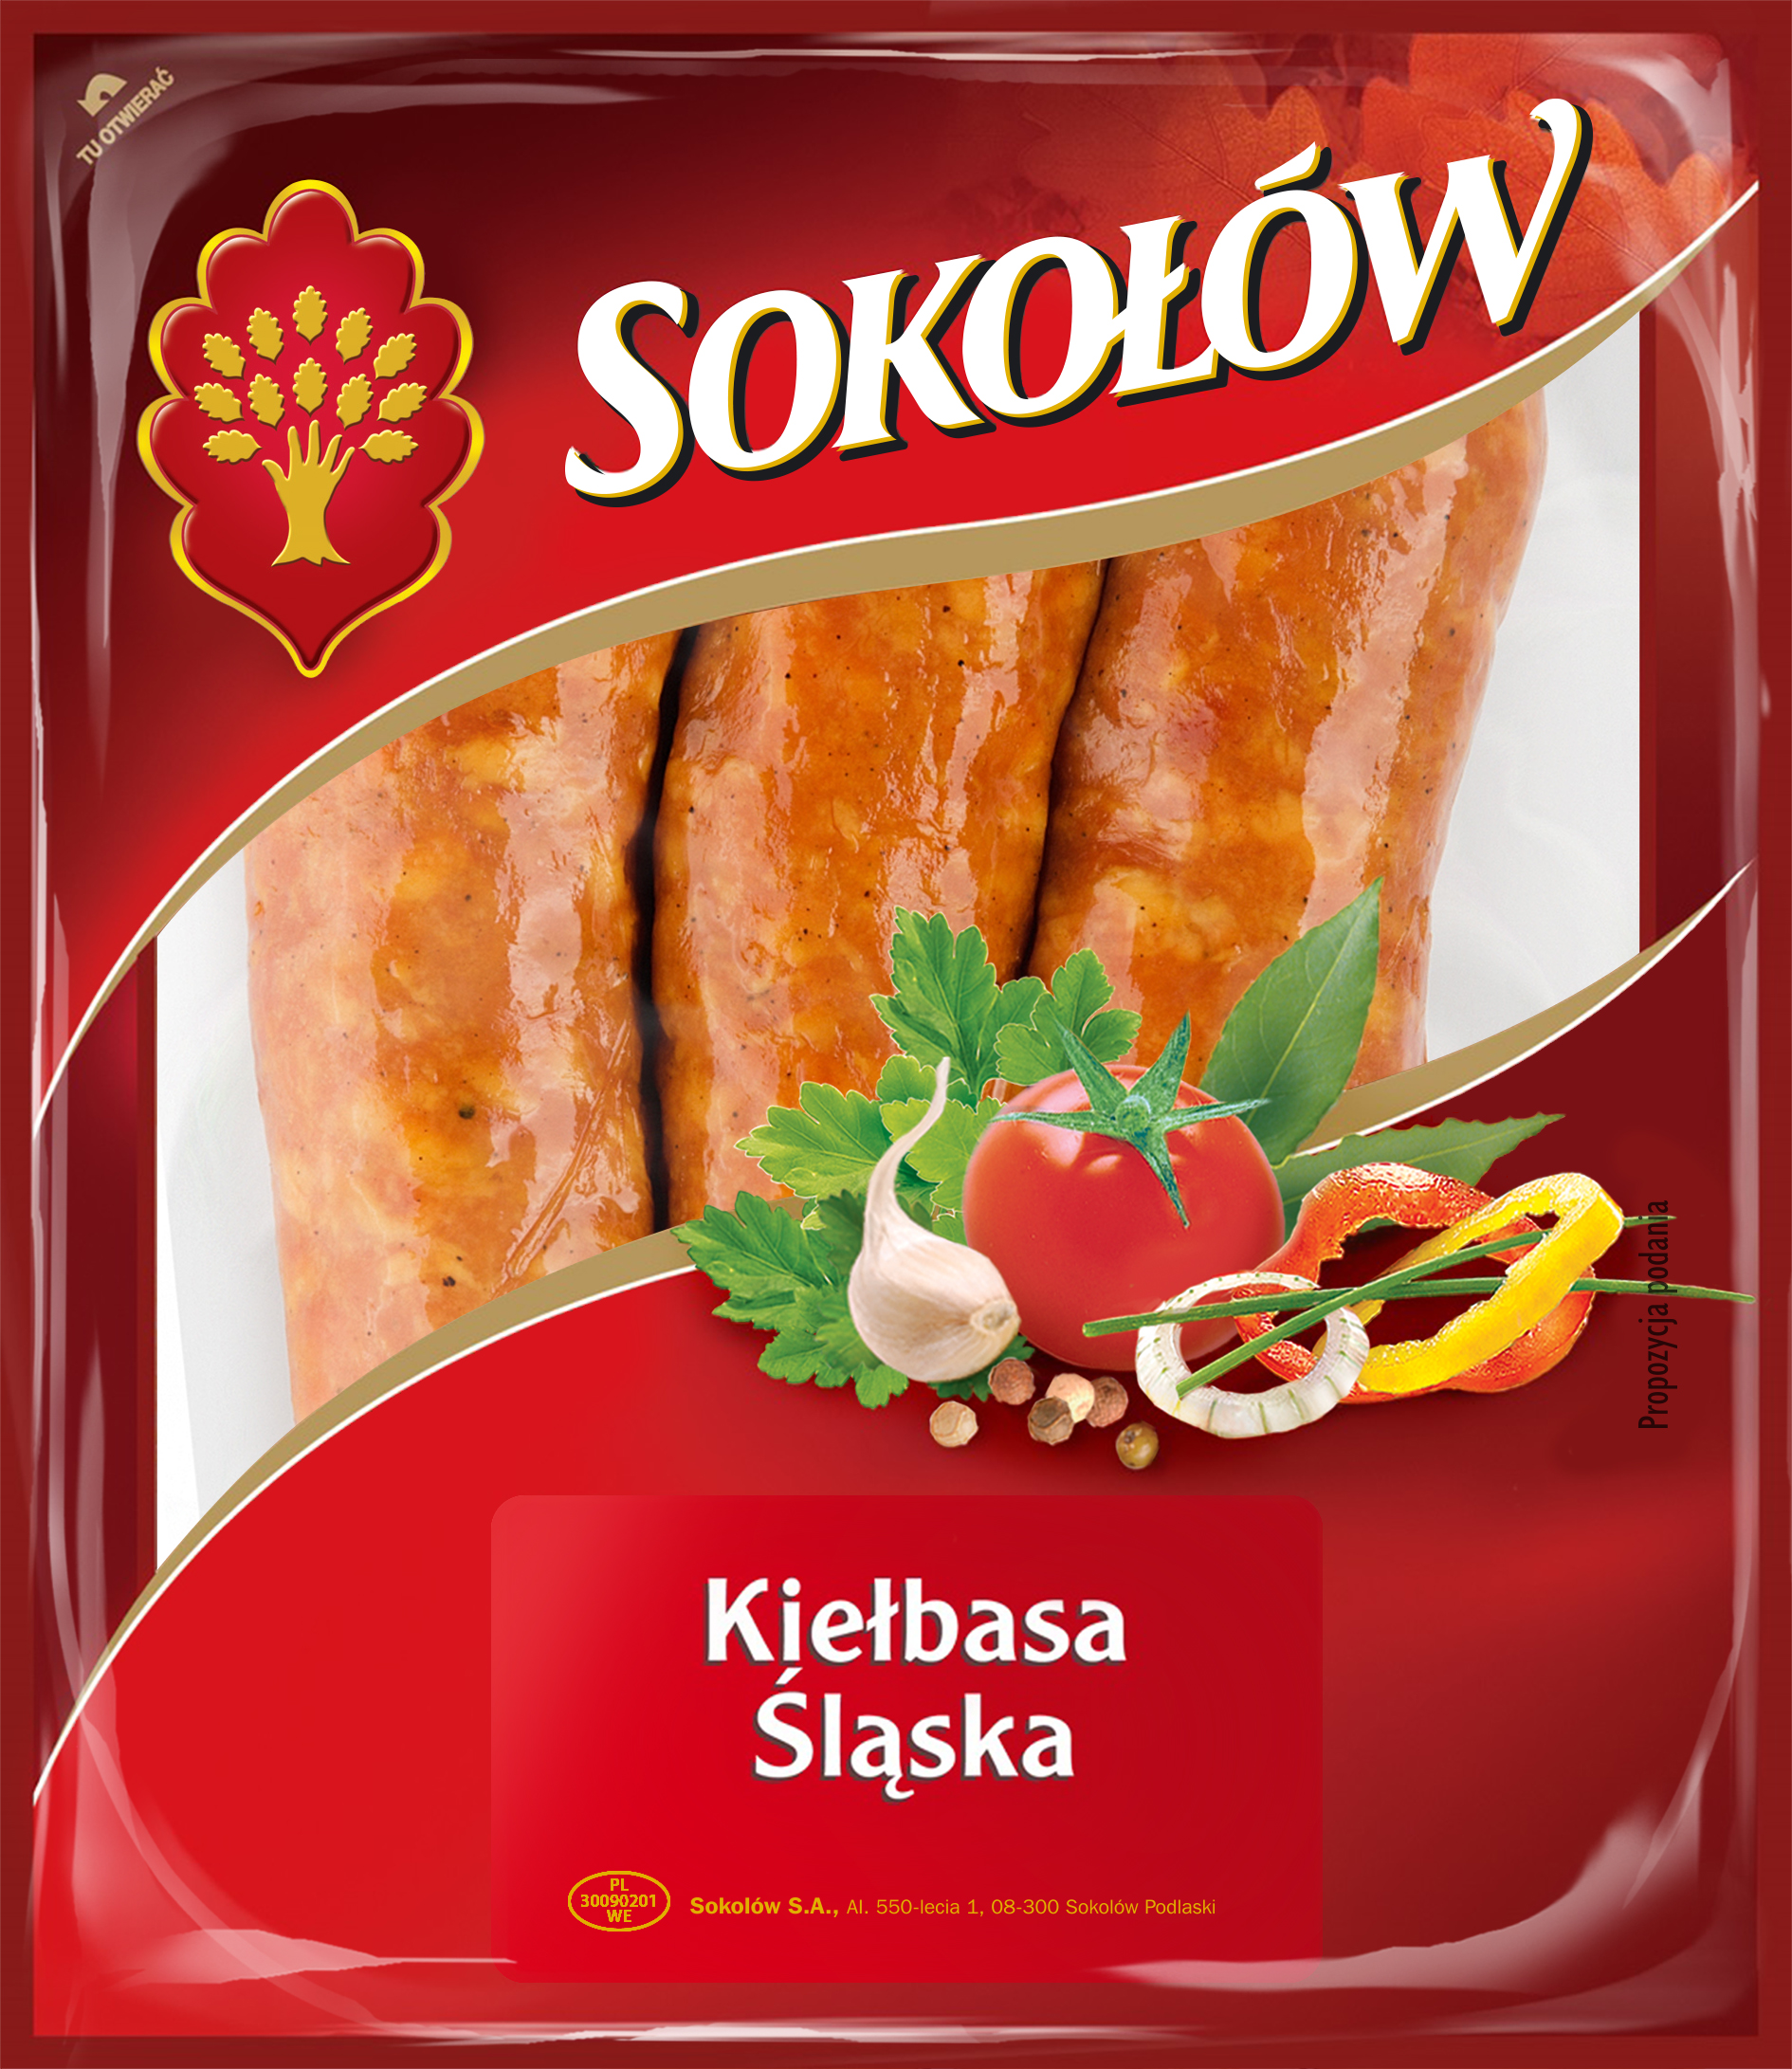 Sokołów Sausage of Silesia